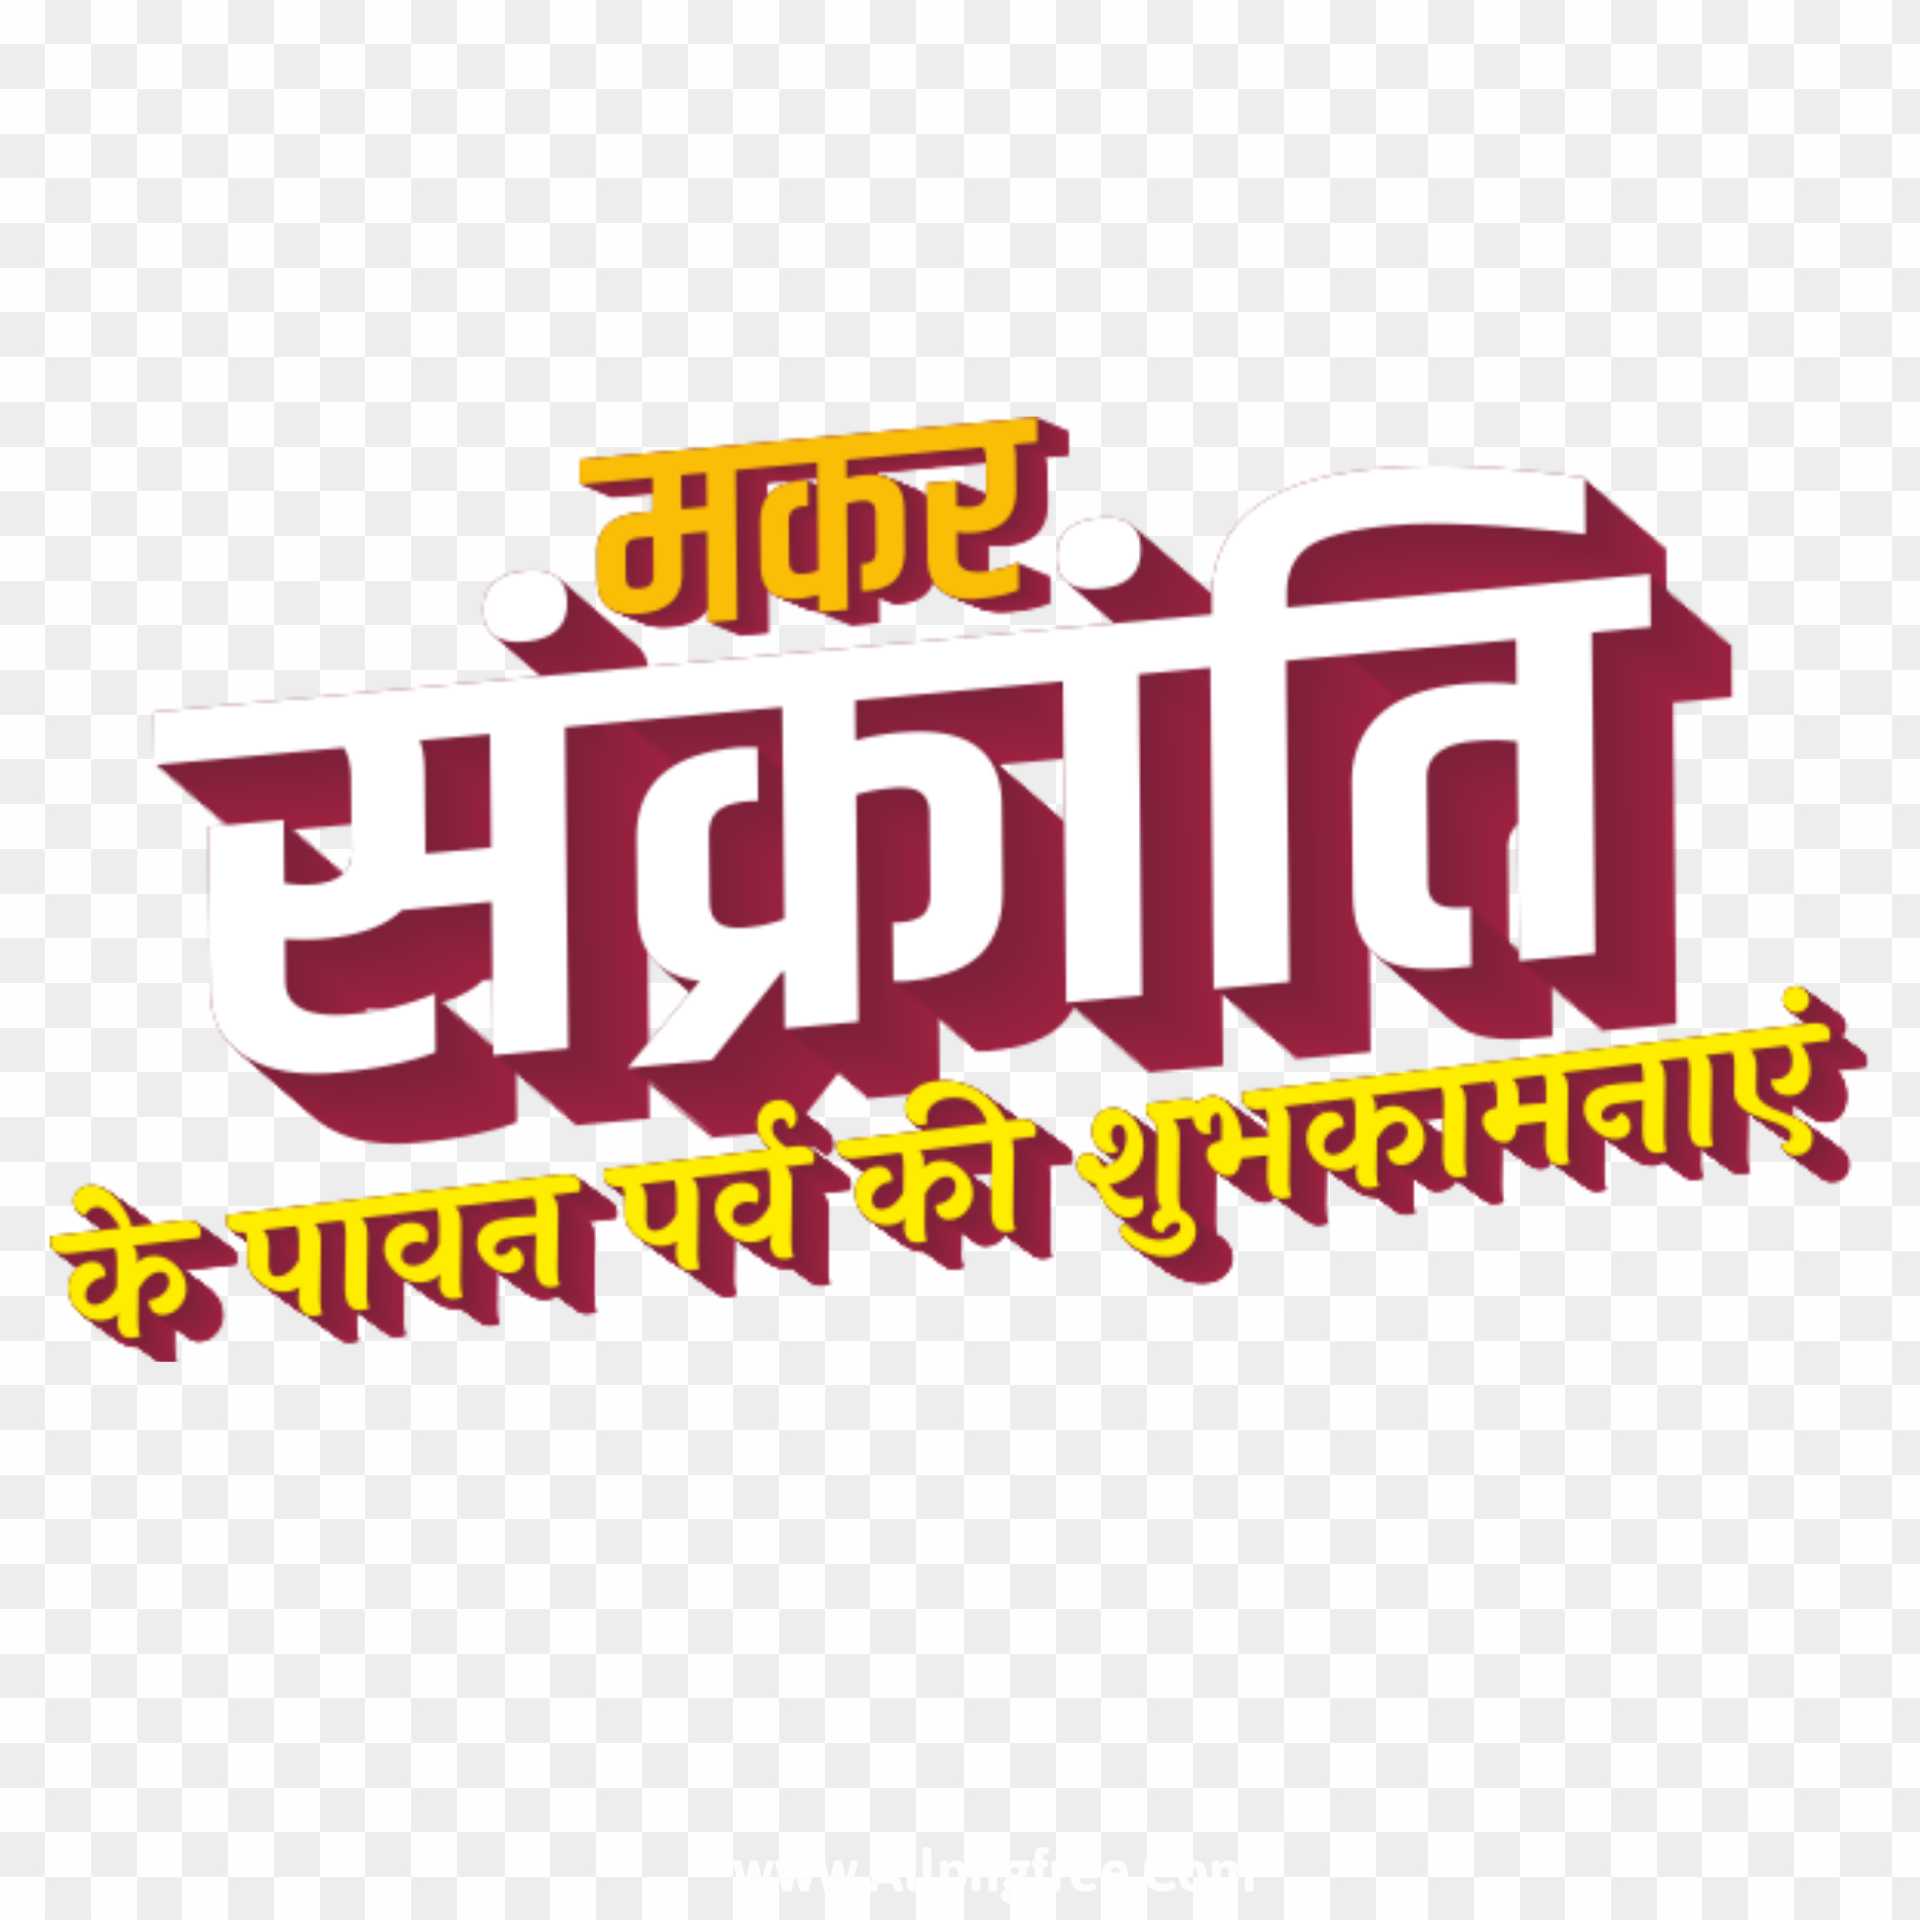 Happy Makar sakranti in Hindi png images